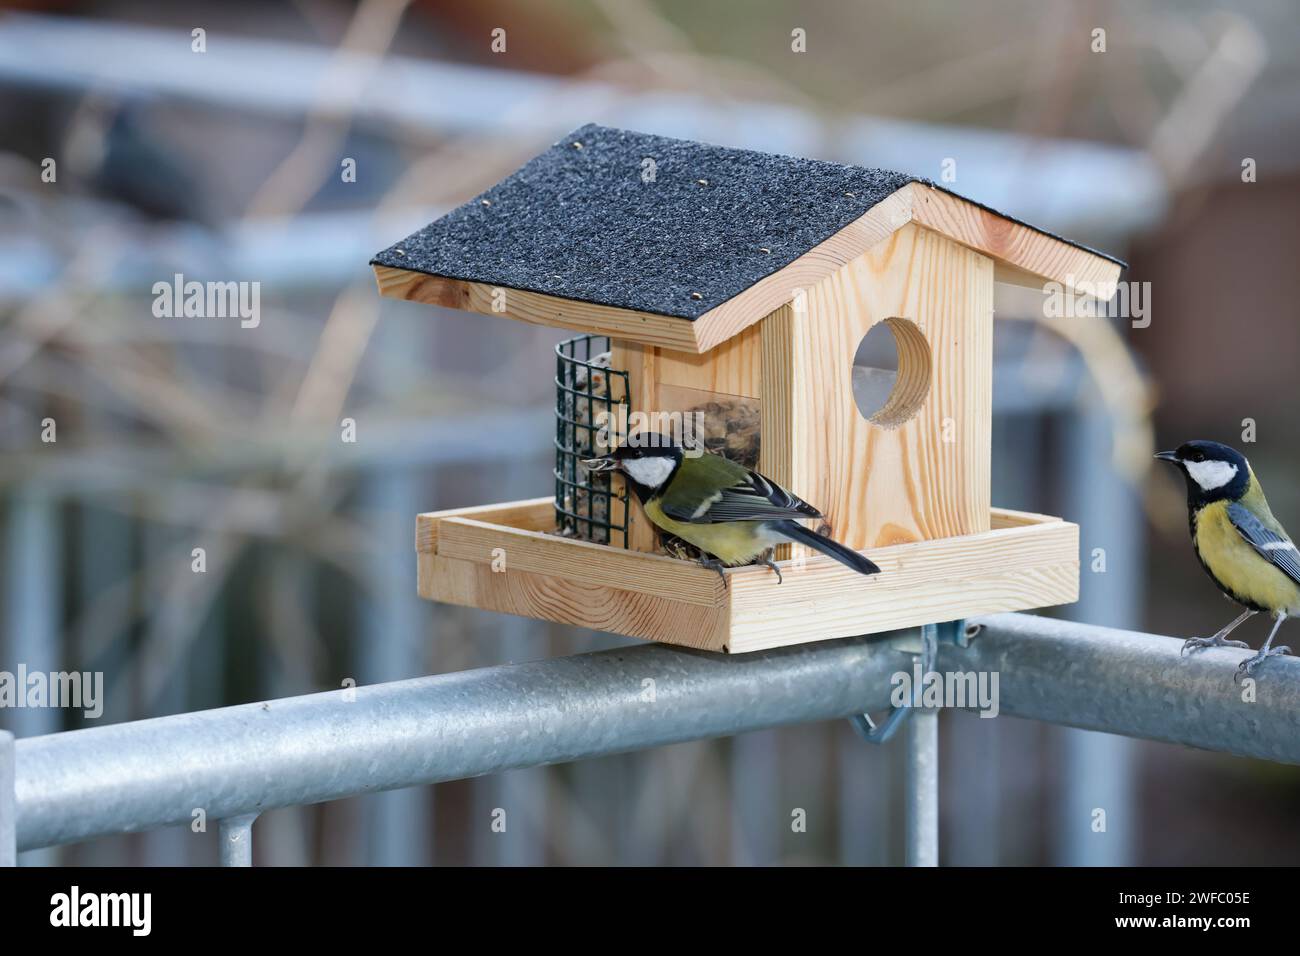 Vogelfütterung auf einem Balkon, Balkongeländer, Vogelfütterung, Fütterung, Futterhäuschen, Vogelfutterhäuschen, Vogelfutterhaus, Vogelhäuschen, Futte Foto Stock